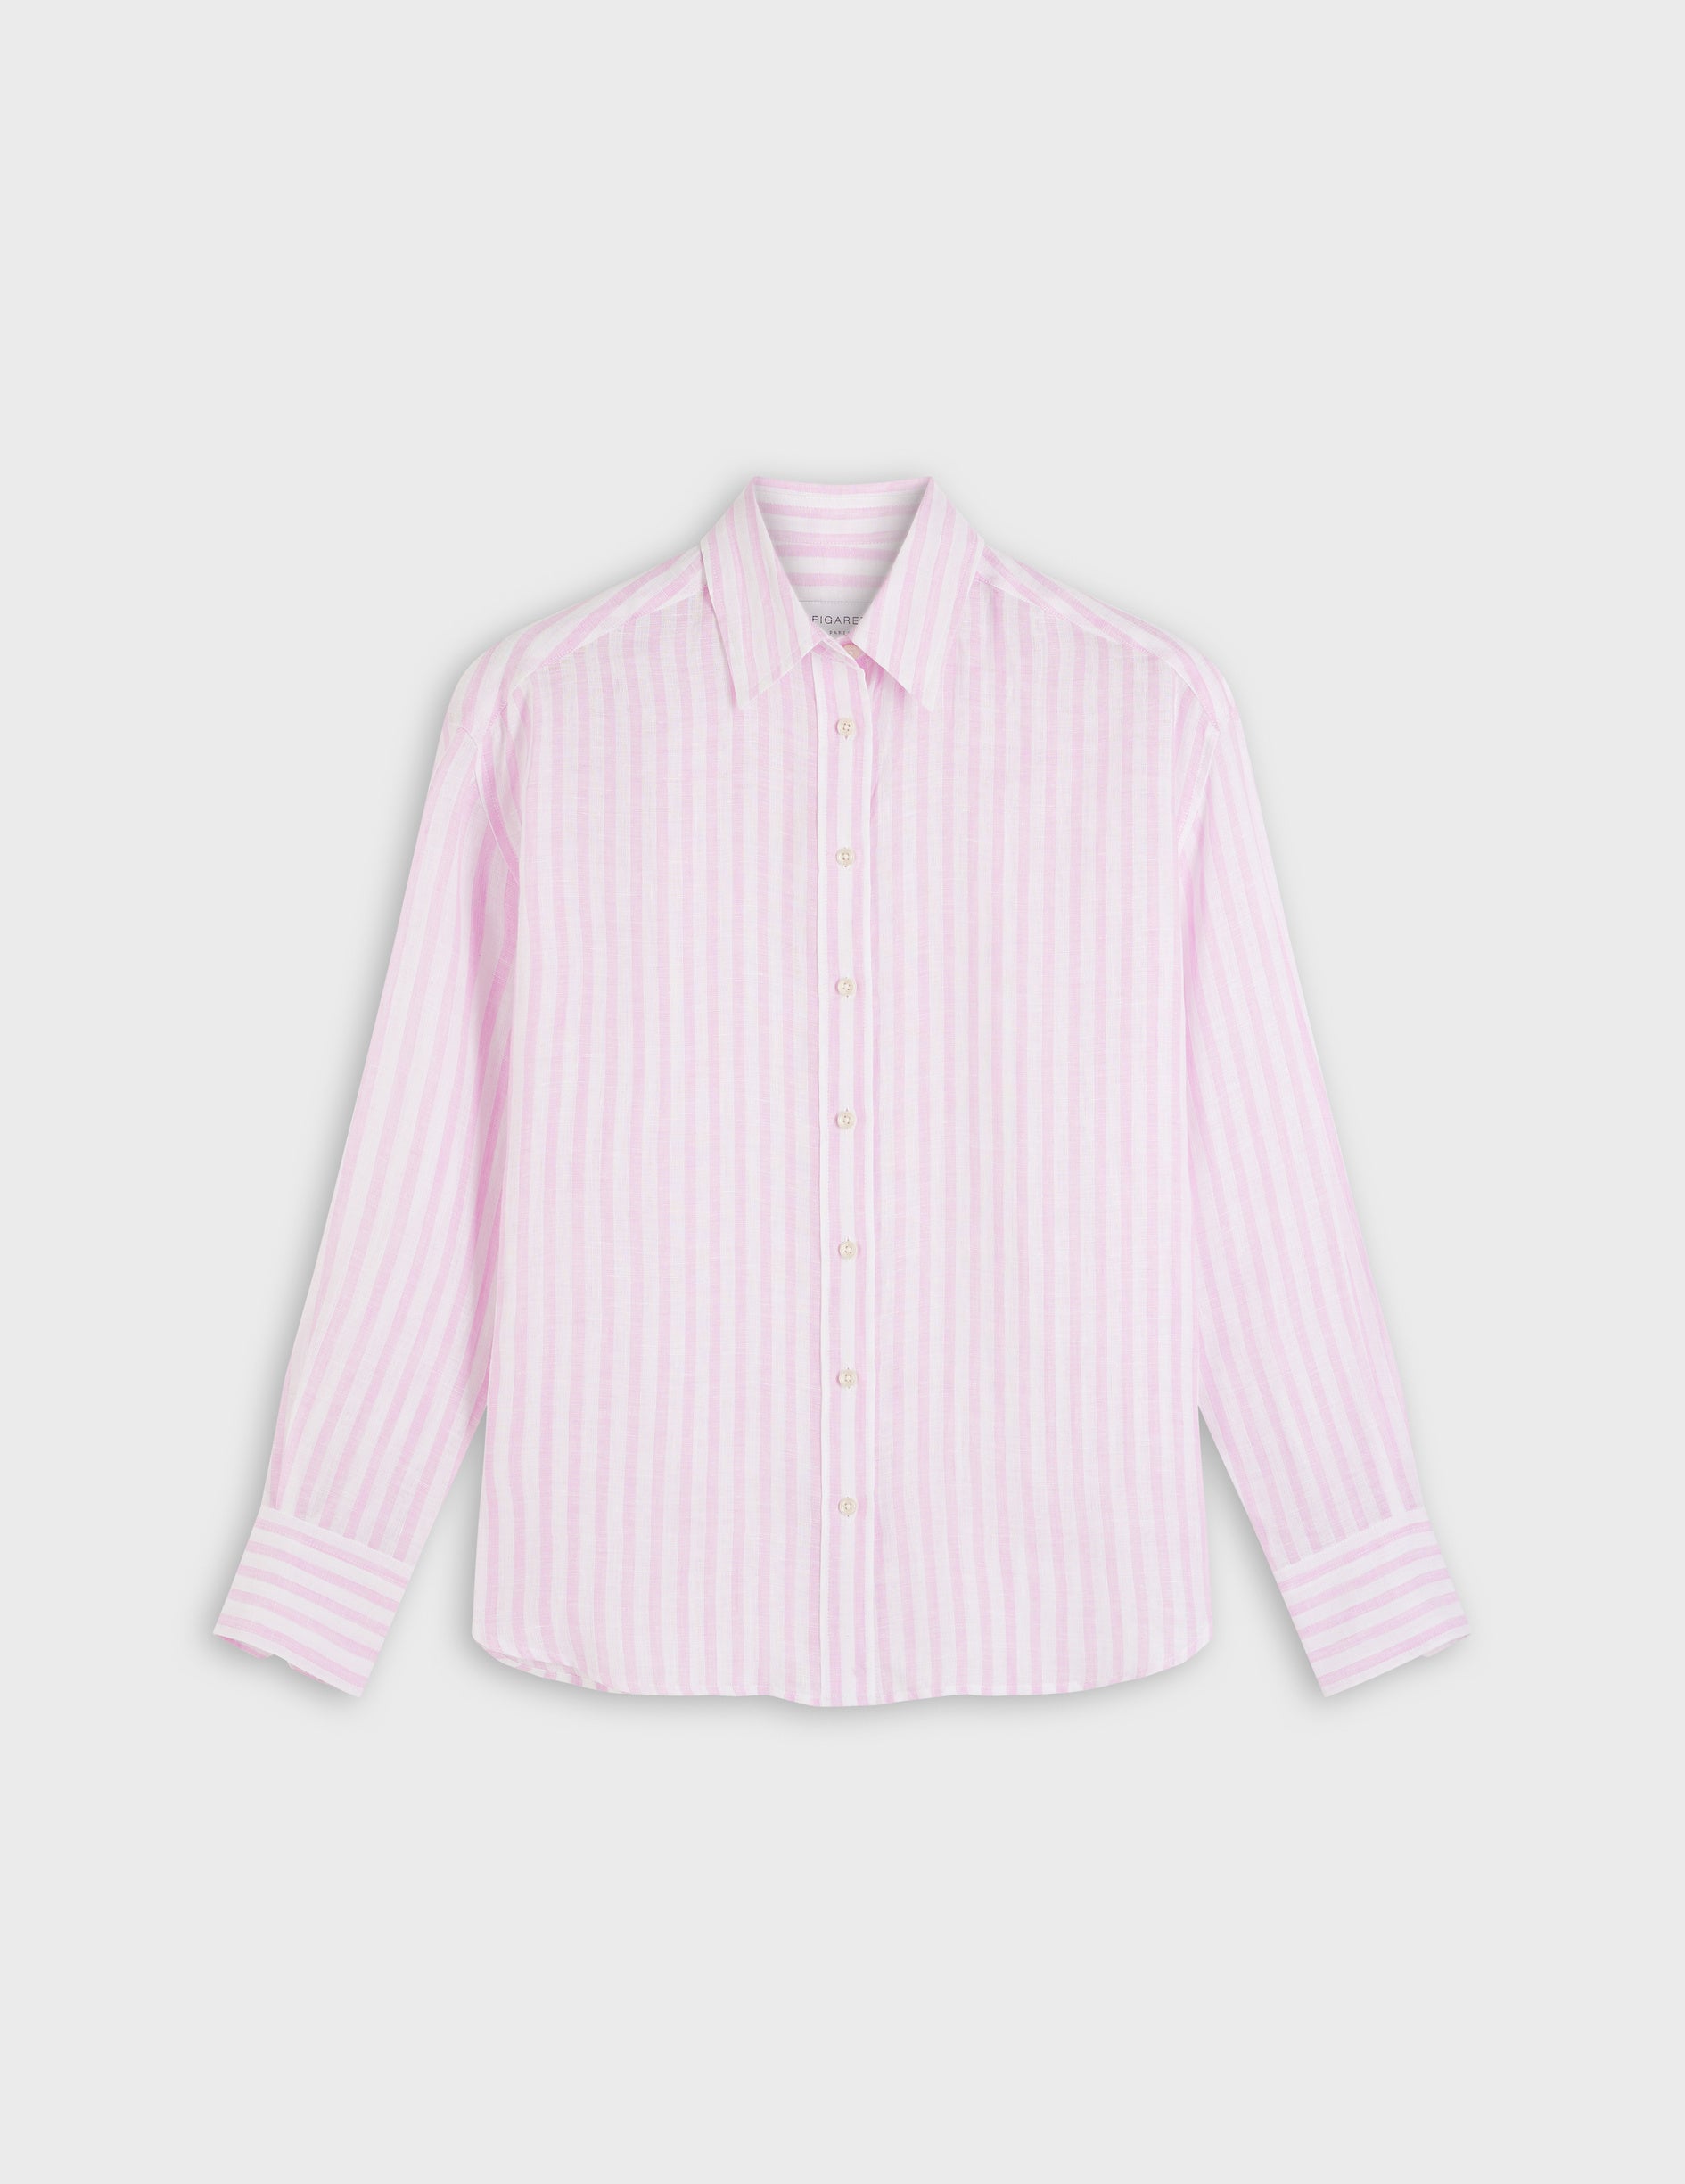 Ambre striped shirt in pink linen - Linen - Shirt Collar